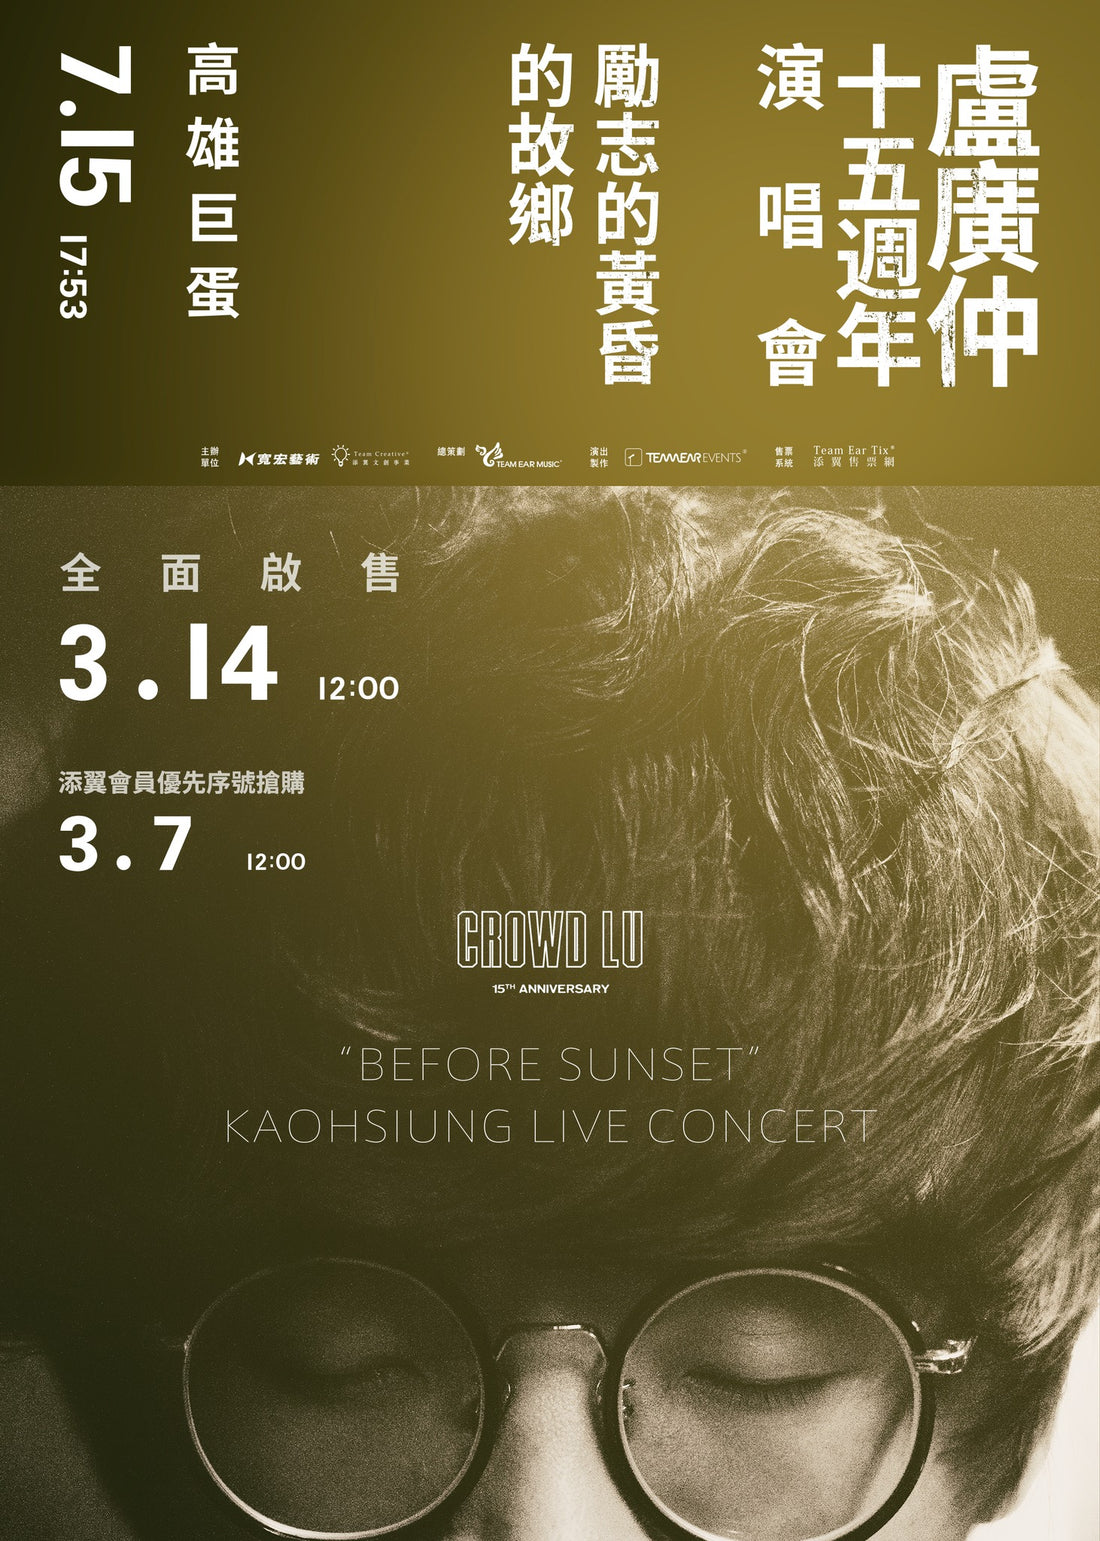 盧廣仲 15 週年 勵志的黃昏 的故鄉 高雄巨蛋演唱會 Crowd Lu “Before Sunset” Kaohsiung Live Concert